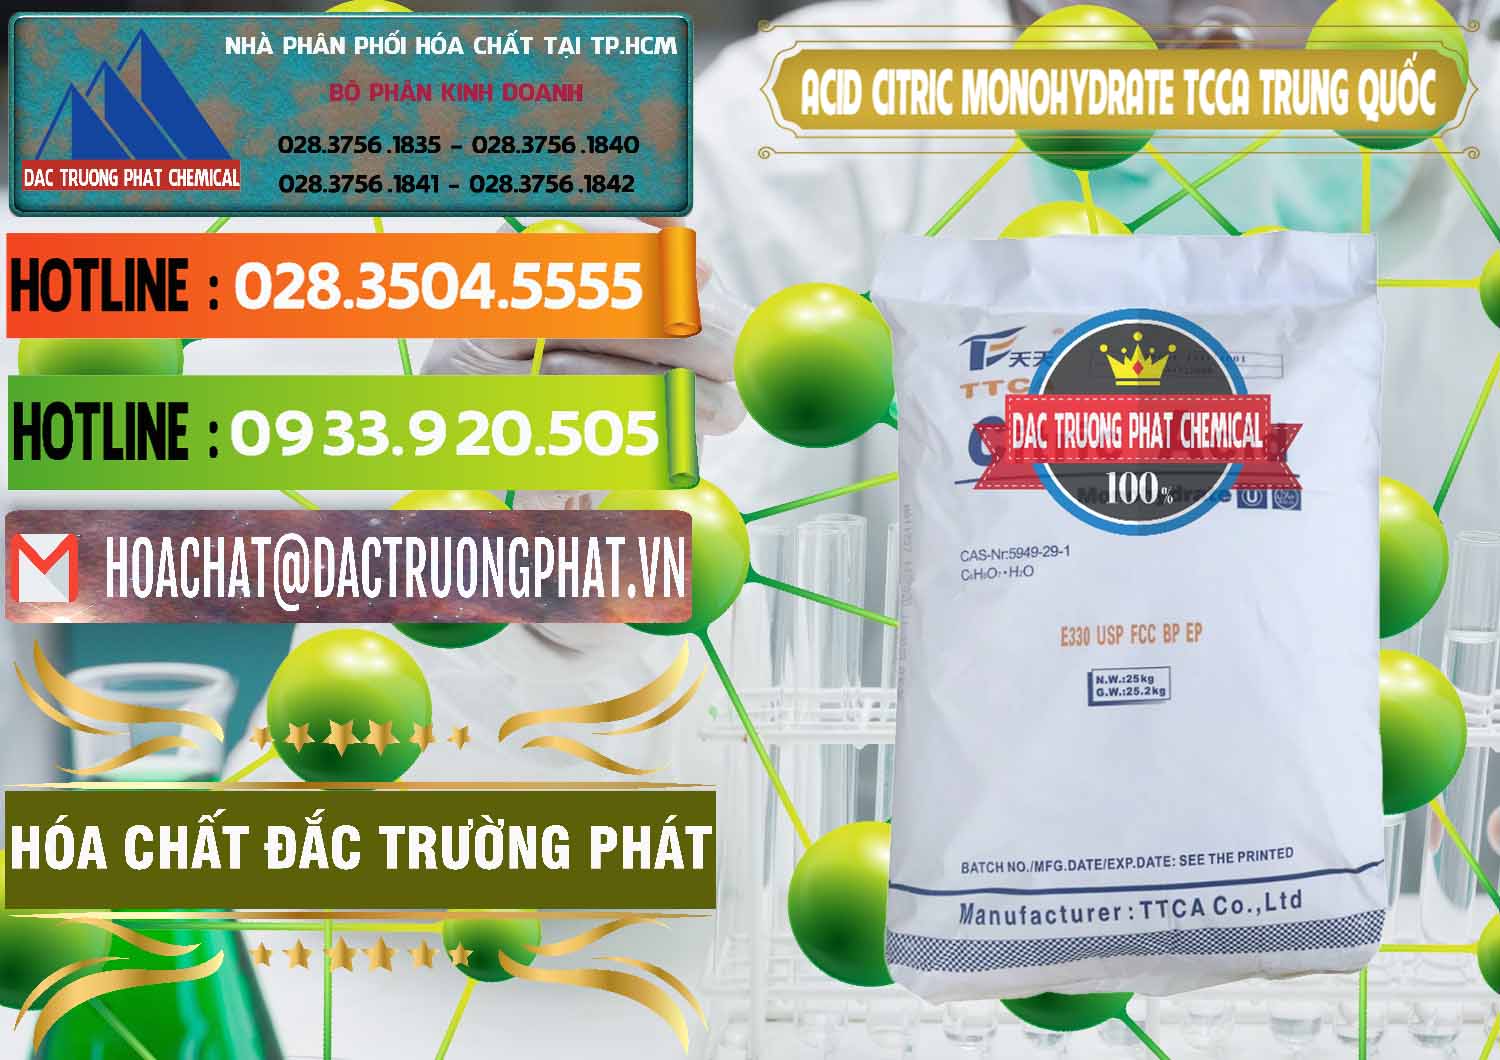 Chuyên kinh doanh ( bán ) Acid Citric - Axit Citric Monohydrate TCCA Trung Quốc China - 0441 - Nơi cung ứng & phân phối hóa chất tại TP.HCM - cungcaphoachat.com.vn